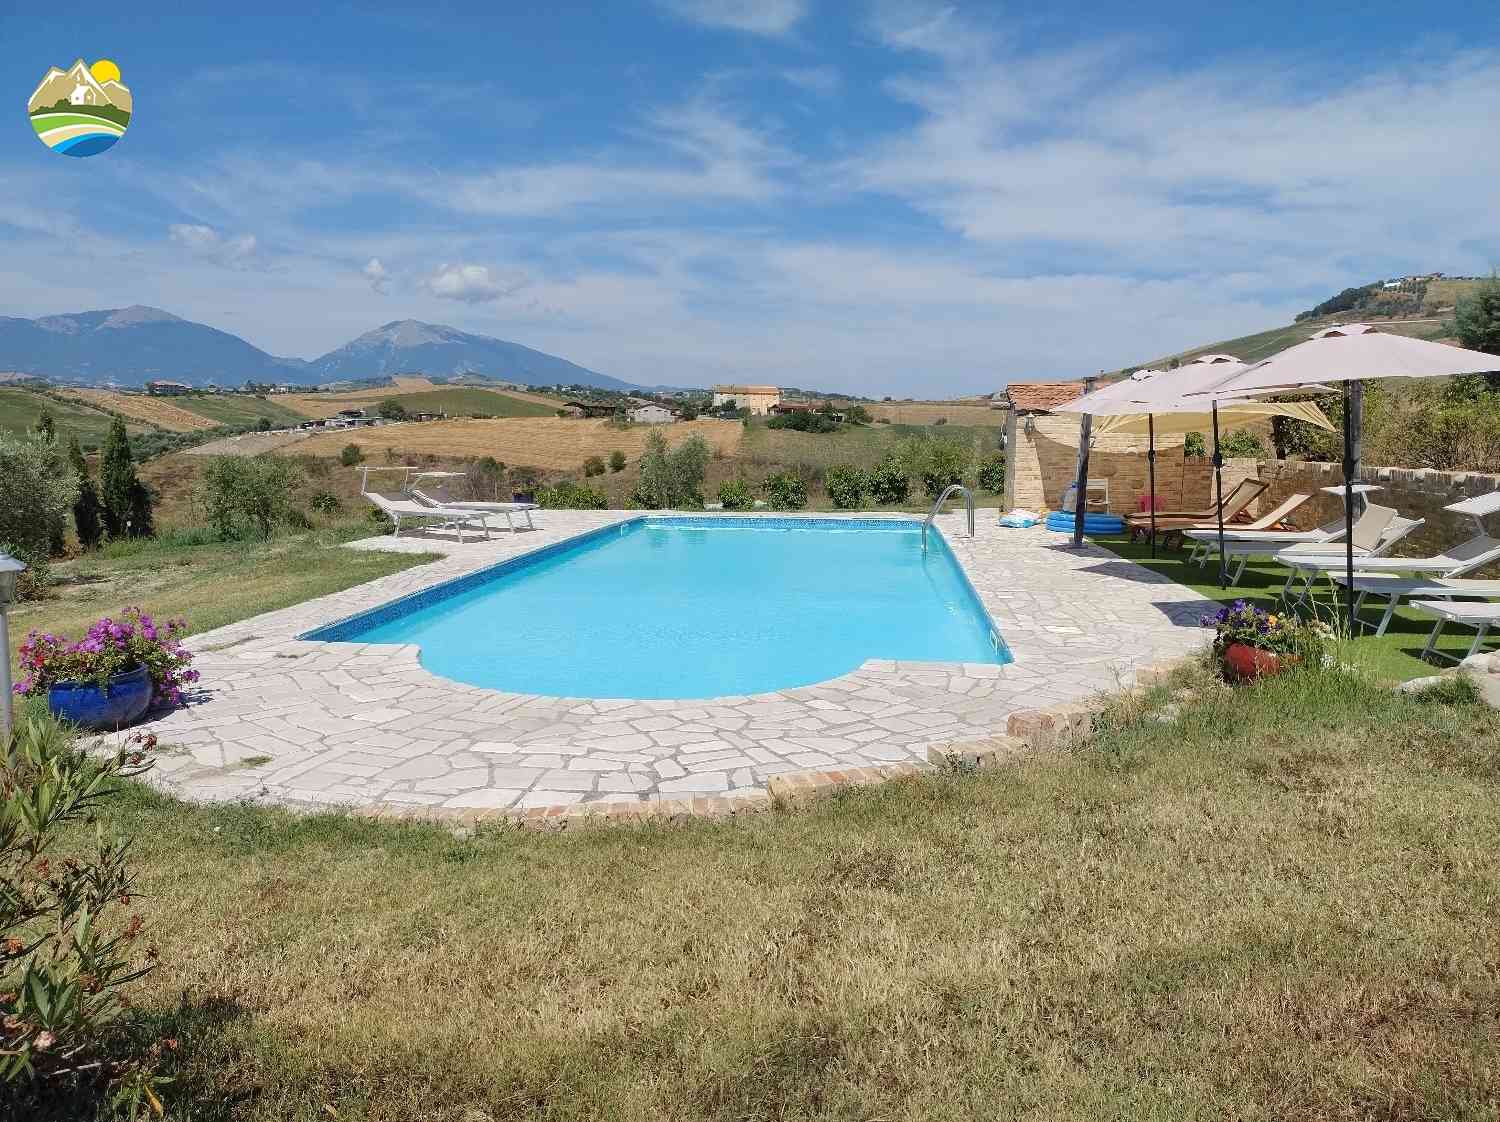 Villa Villa in vendita Bellante (TE), Villa Il Frutteto - Bellante - EUR 509.983 1110 small